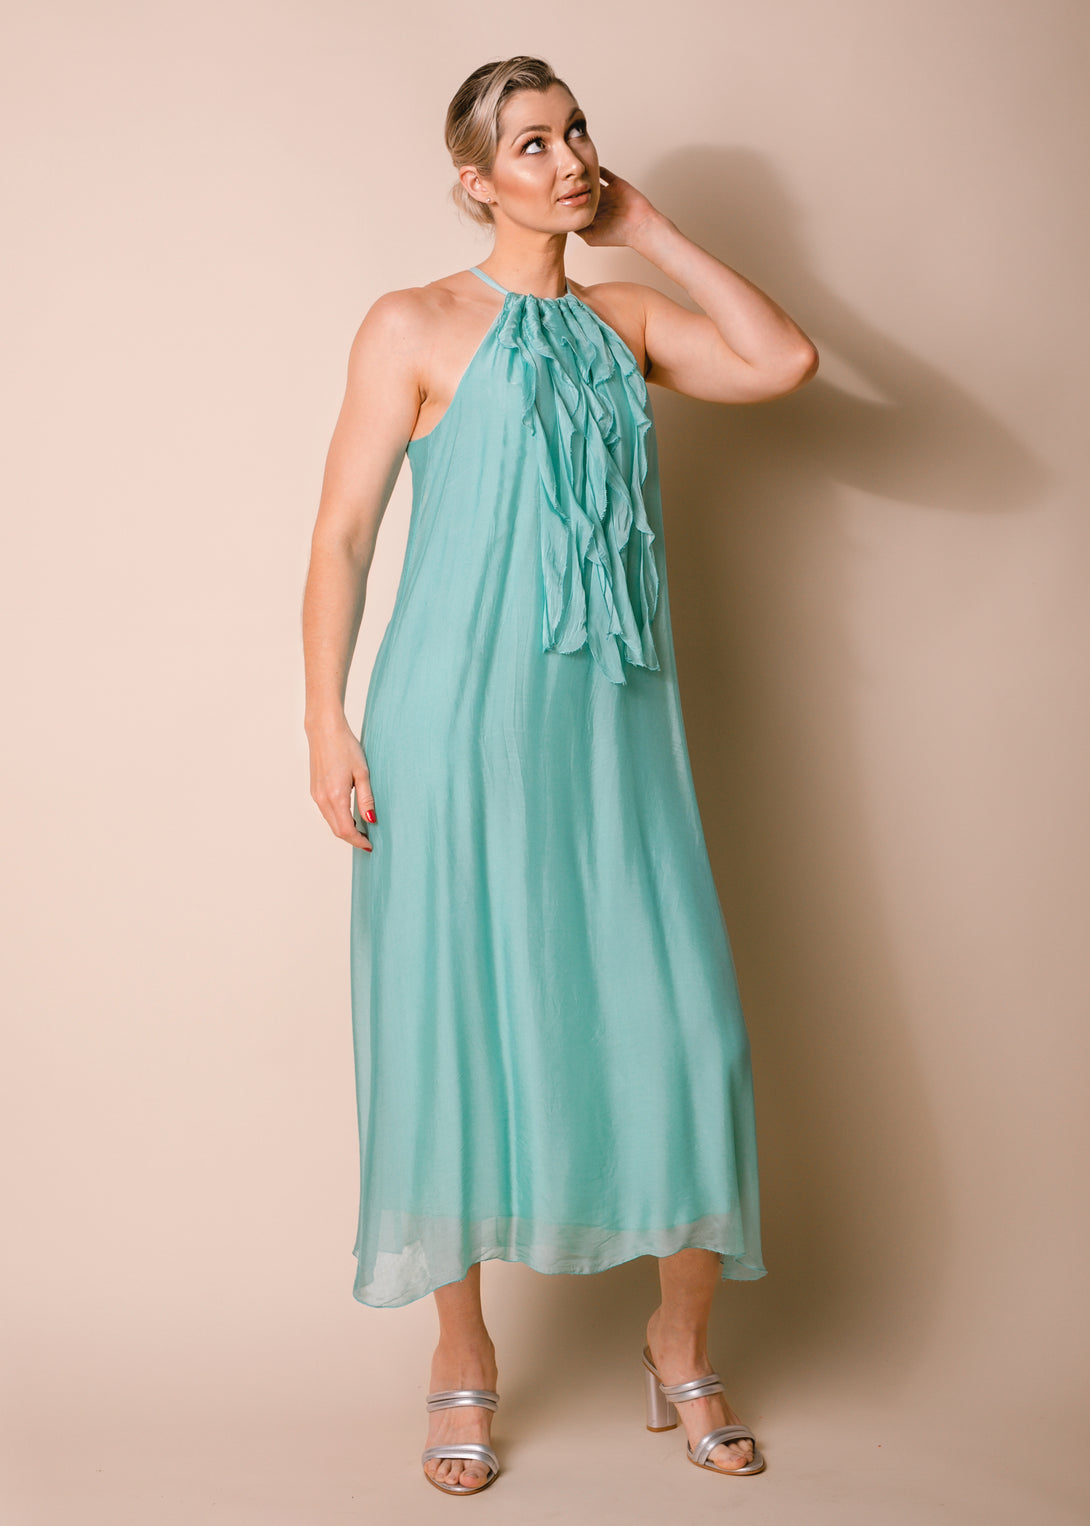 Cadence Silk Dress in Sea Green - Imagine Fashion